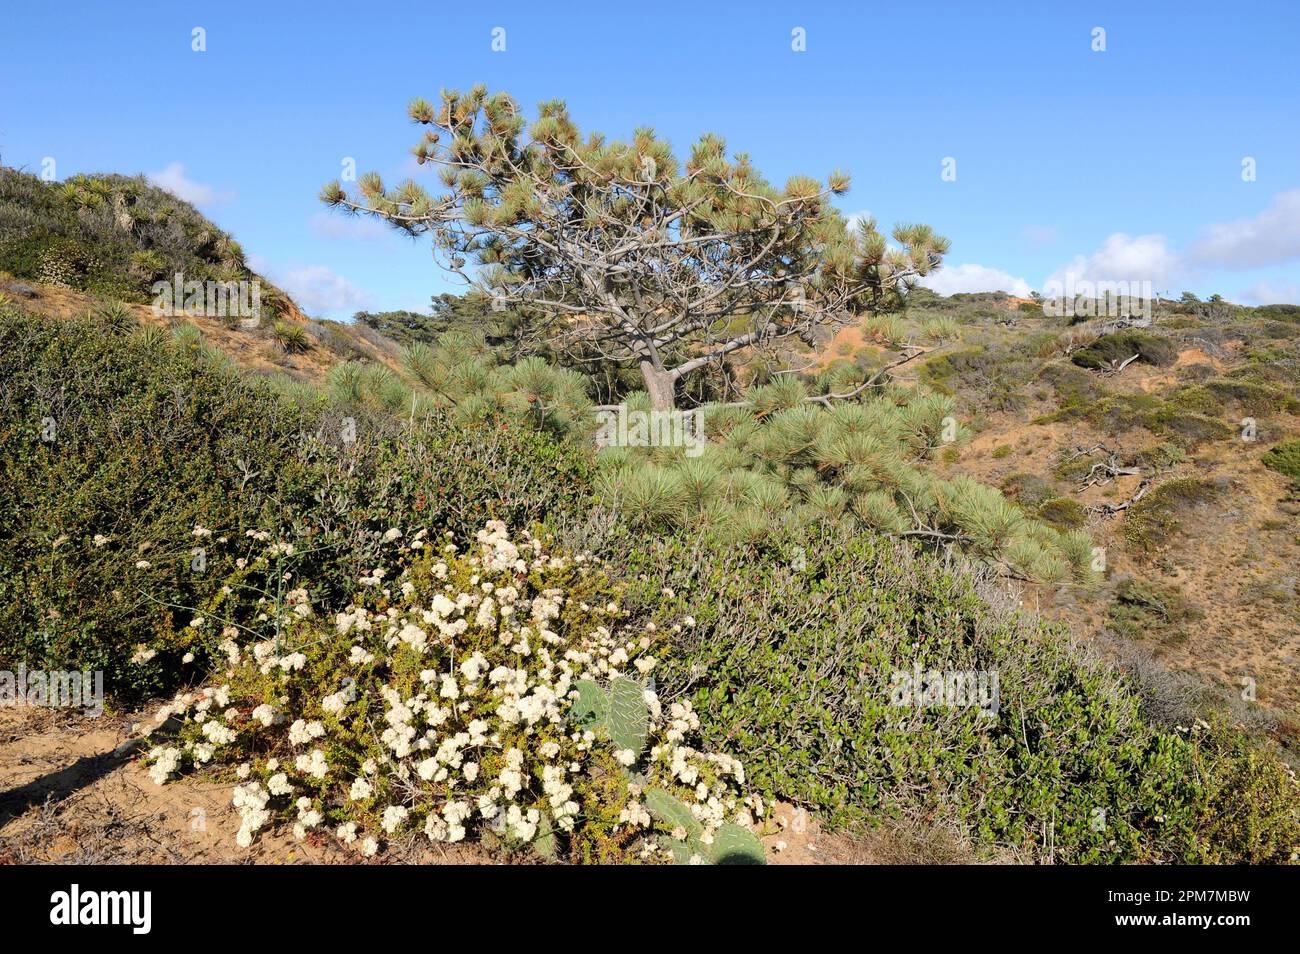 El pino Torrey (Pinus torreyana) es un árbol de hoja perenne endémico de la costa de California (San Diego y Santa Bárbara). Esta foto fue tomada en La Jolla, San Foto de stock